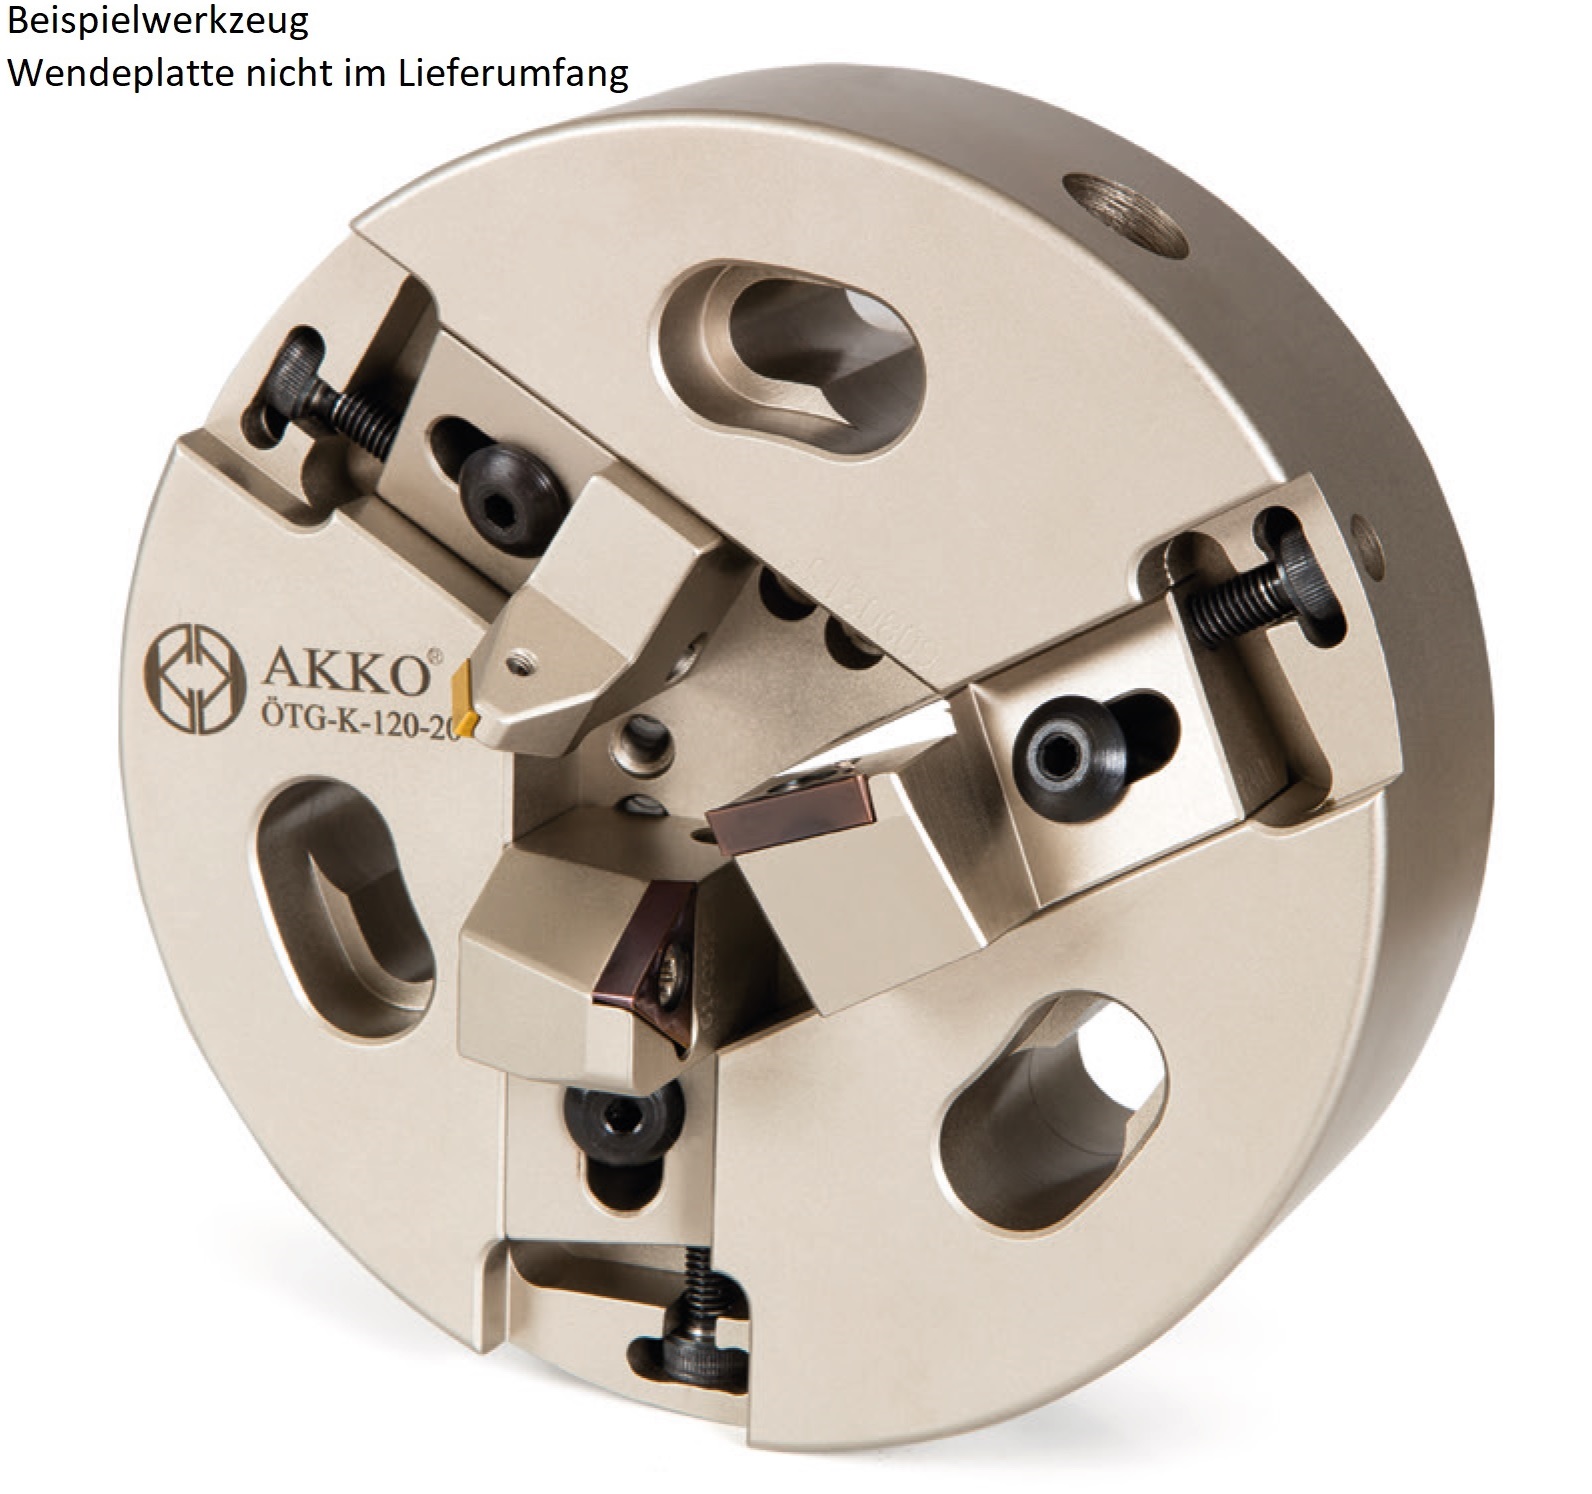 AKKO-Rohrenden-Anfaswerkzeug Dmax 38 mm, Dmin 15 mm, kompatibel mit ISO-Wendeplatte TC.. 16T3..
